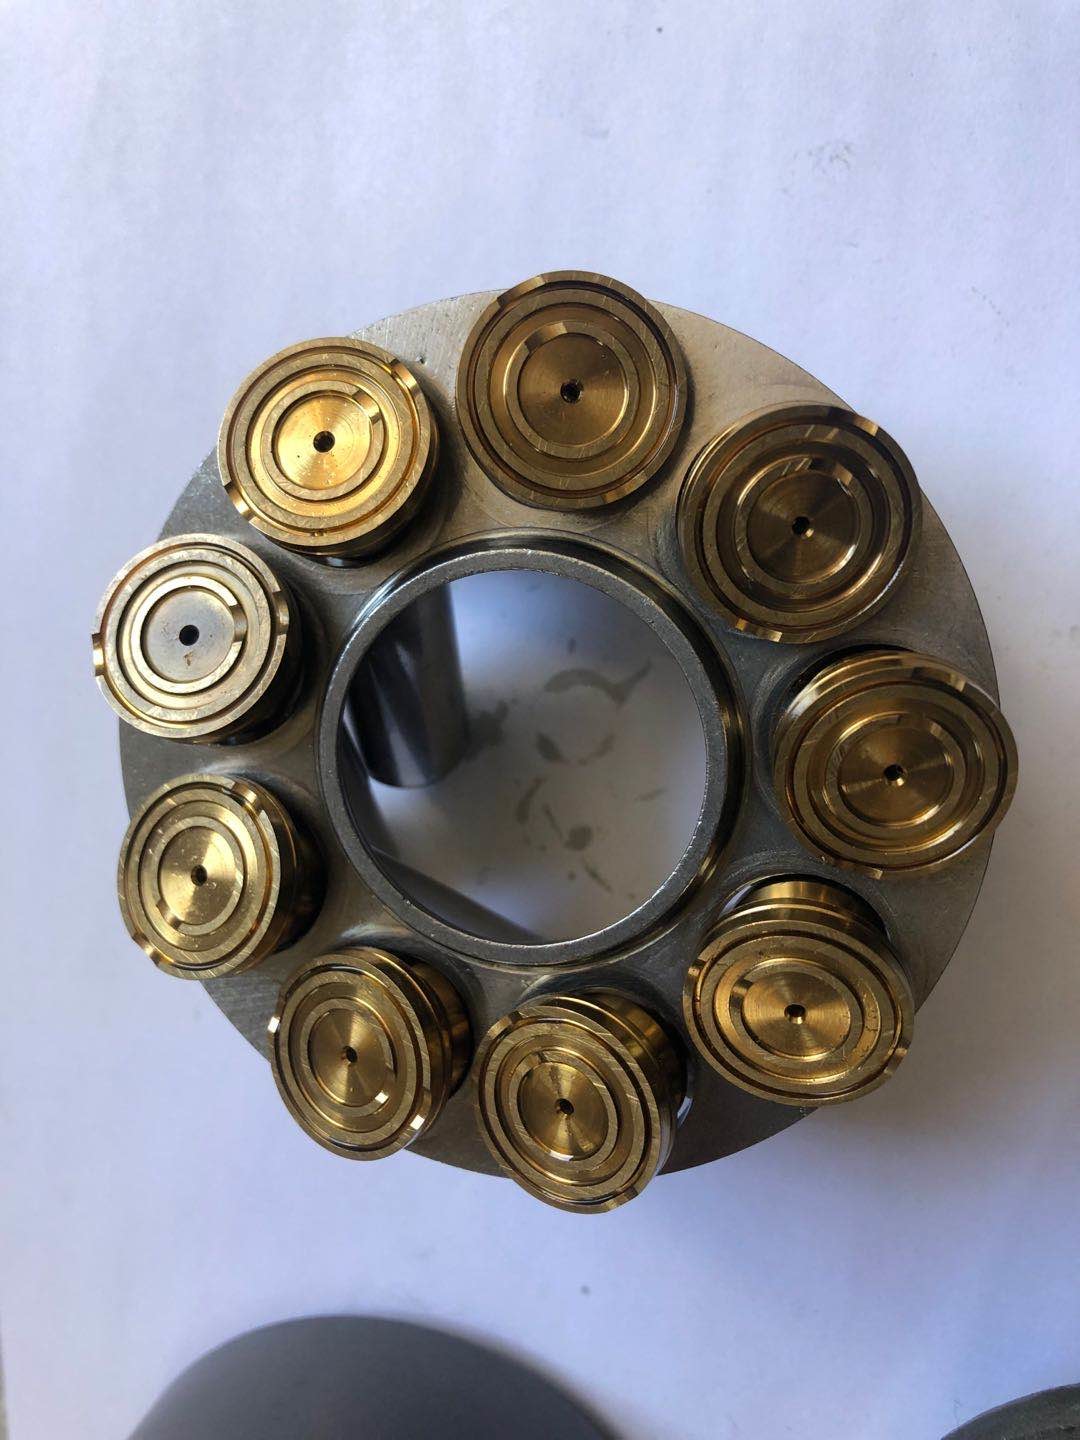 Numero del pezzo dei pezzi di ricambio della pompa idraulica di diesel226B: 233-5649 o parti della pompa a pistone di A20VG45 Rexroth